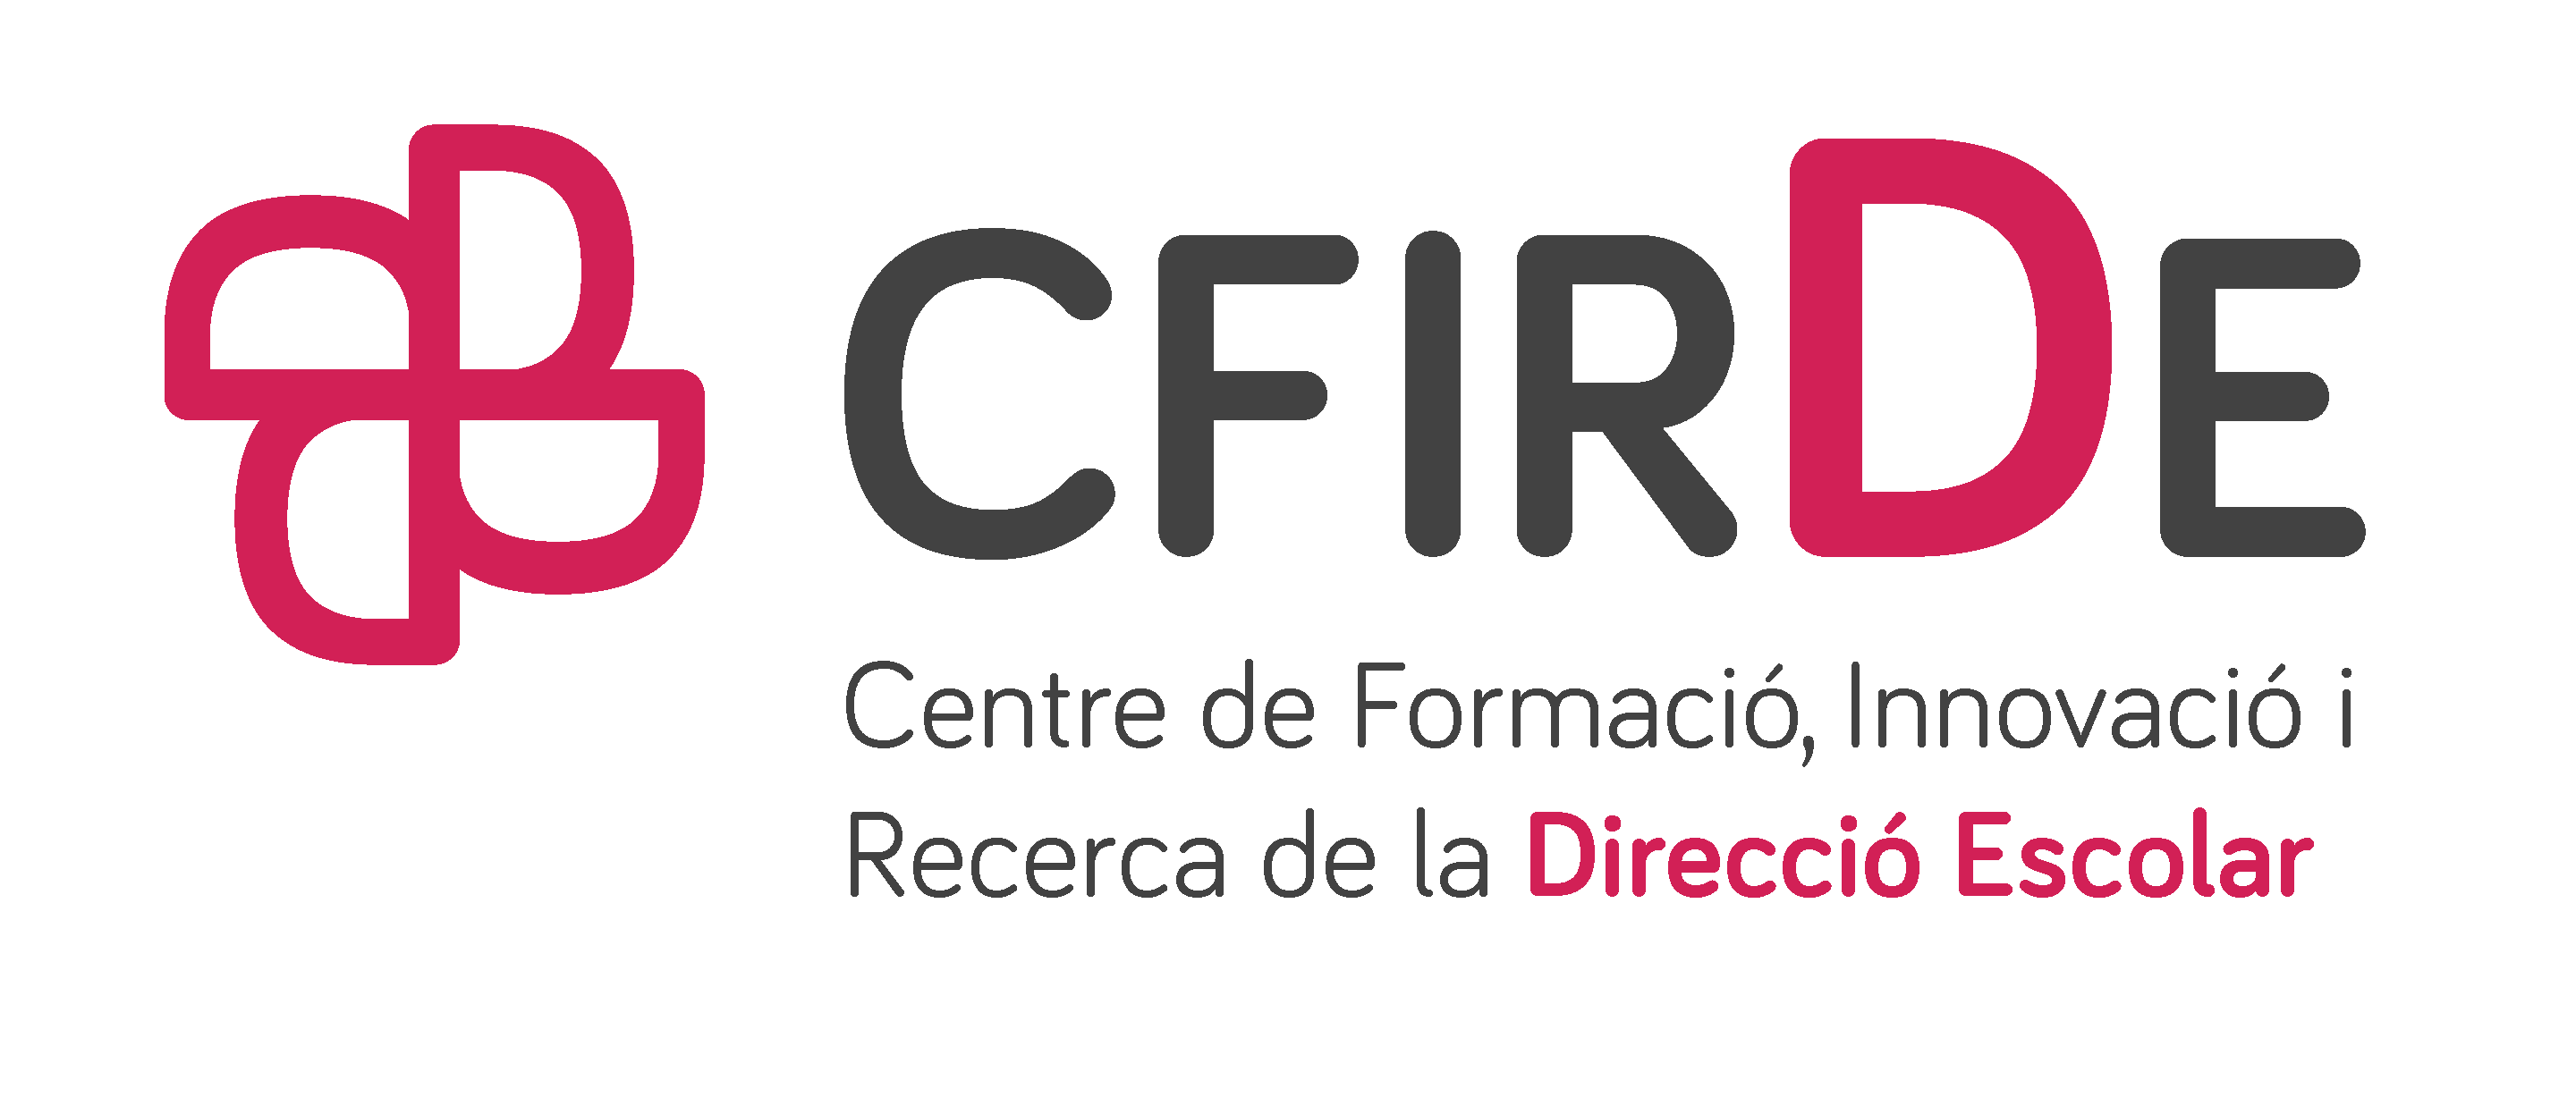 CFIRDE logo transparent 1 5093440ca